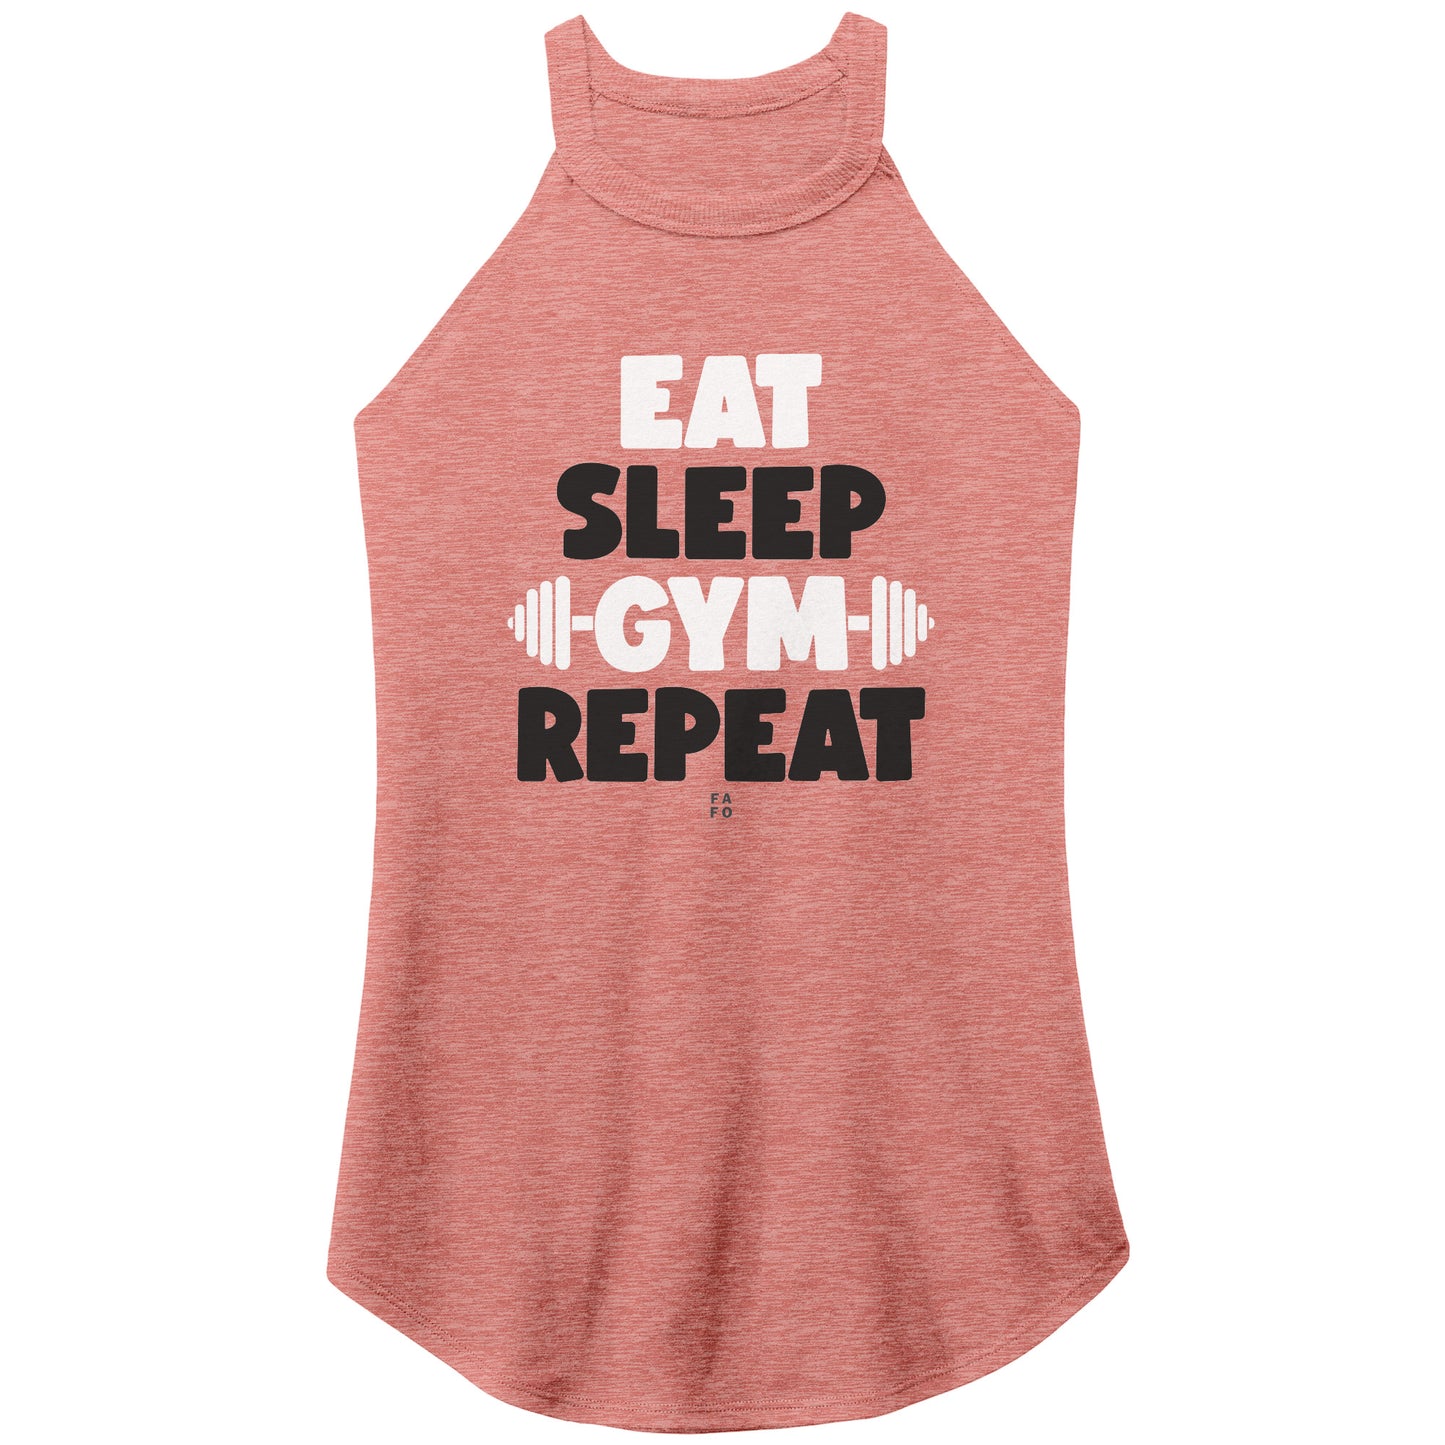 Rocker Tank - Eat Sleep Gym Repeat - FAFO Sportswear